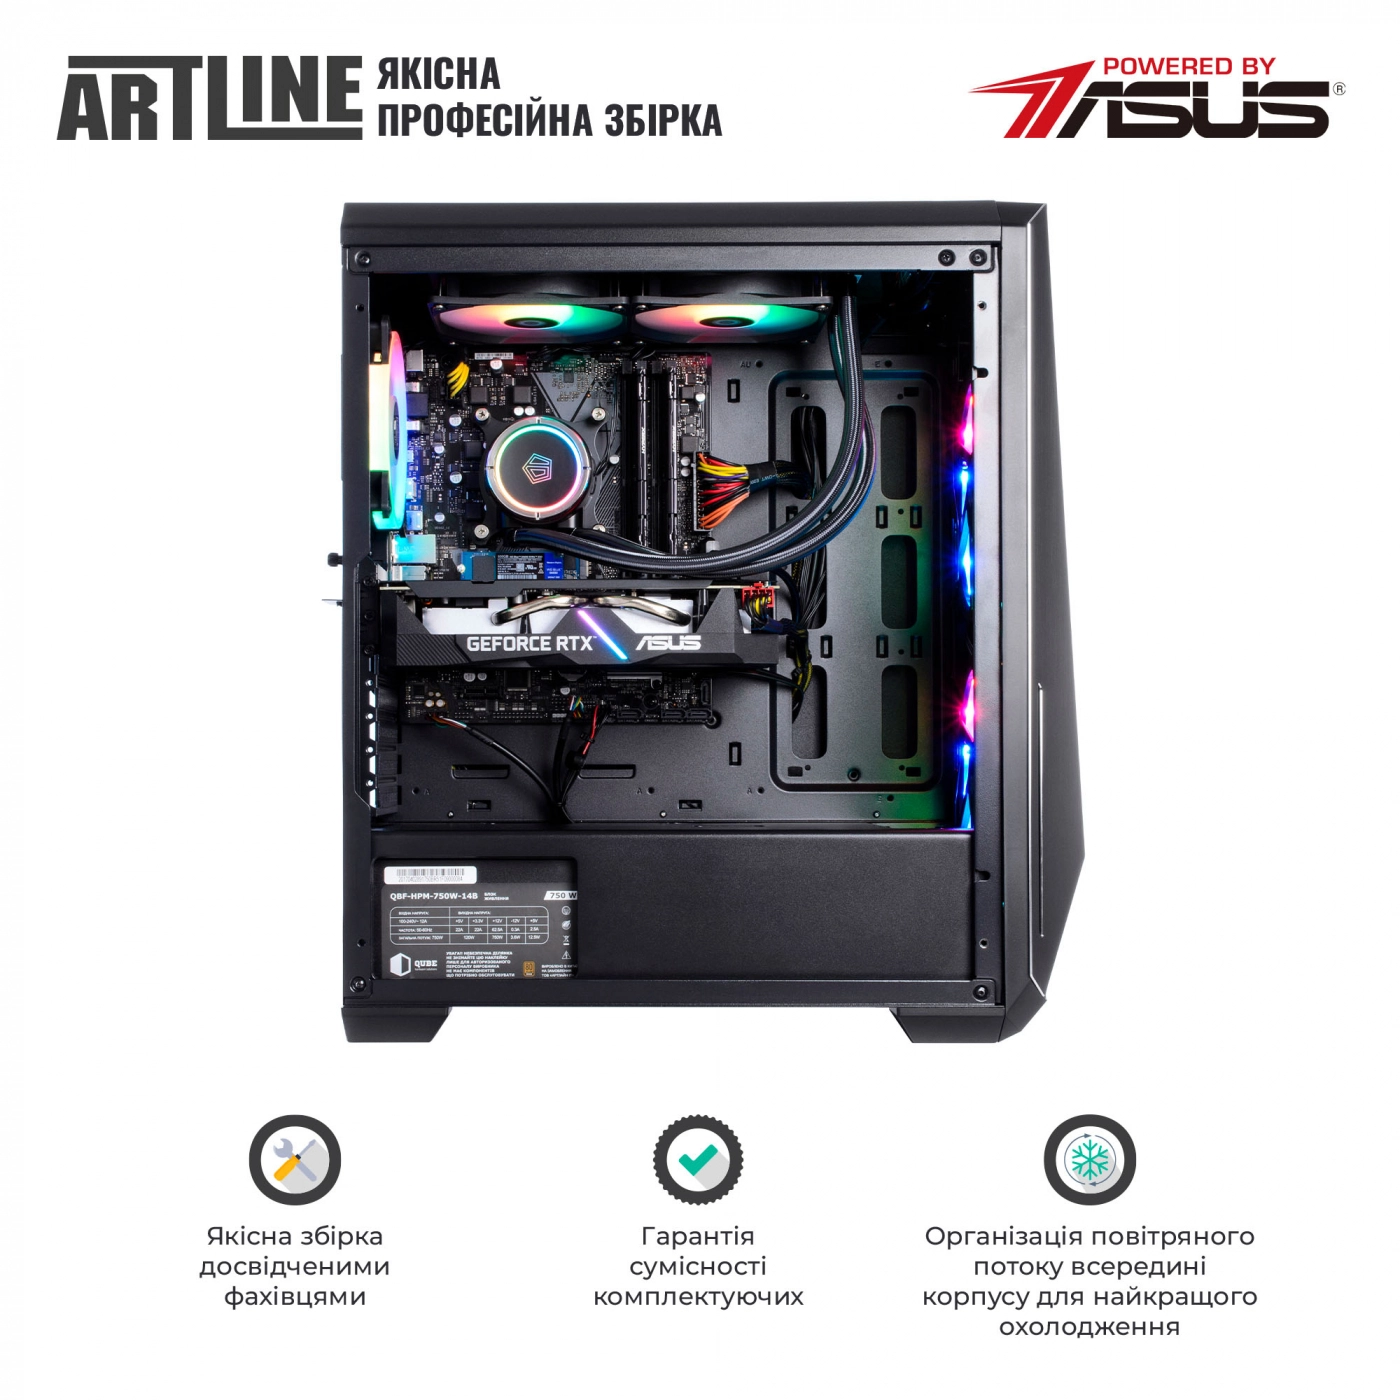 Купить Компьютер ARTLINE Gaming X77v48 - фото 8